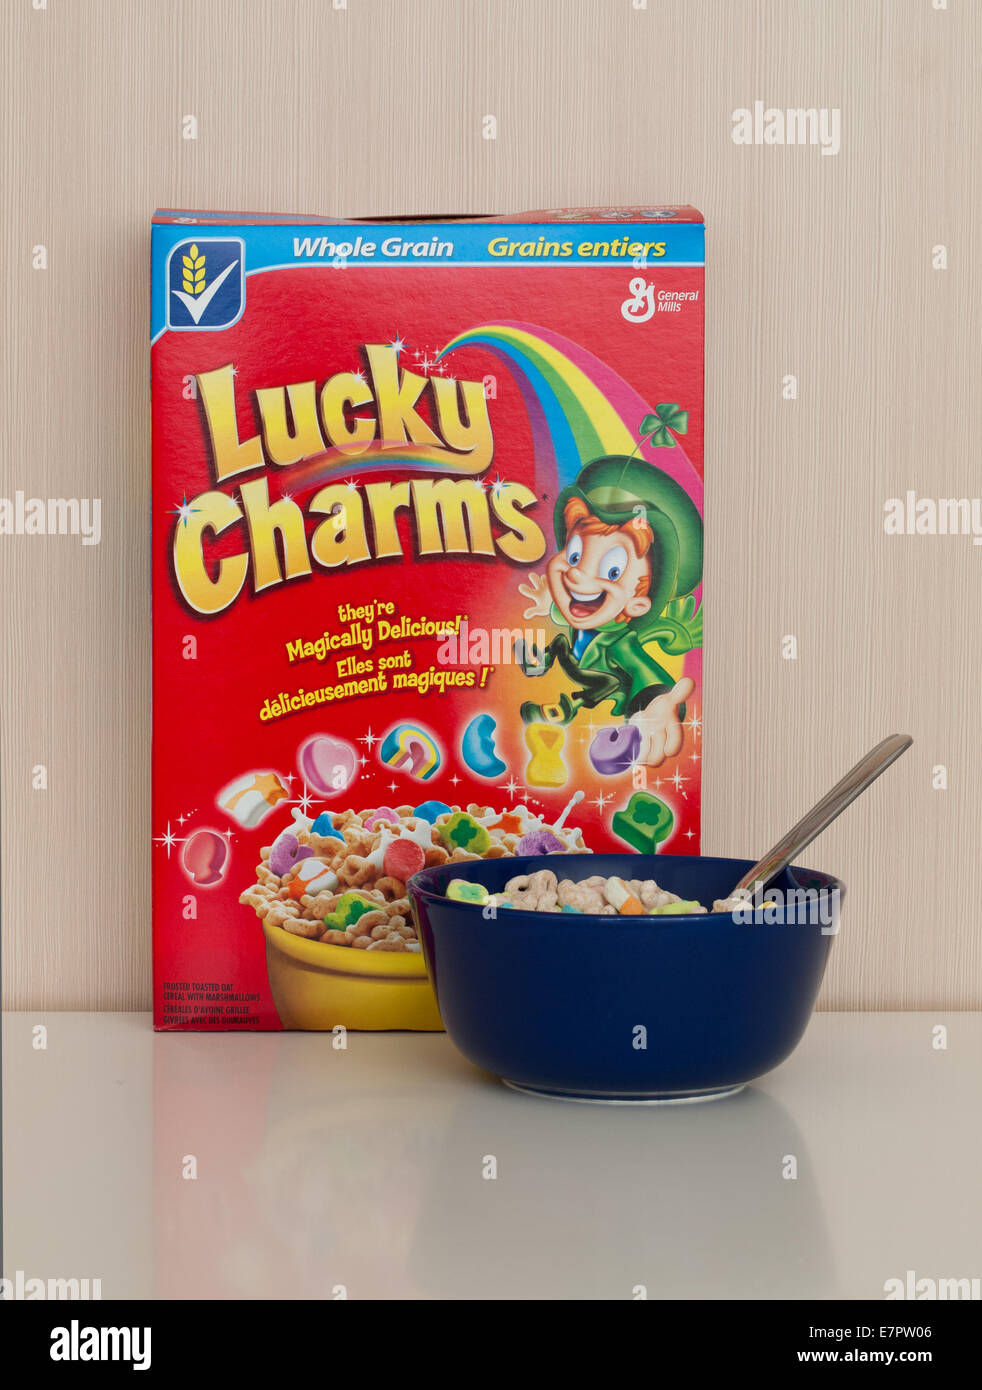 Un cuadro y el tazón de cereales Lucky Charms, producida por General Mills, Inc. Foto de stock